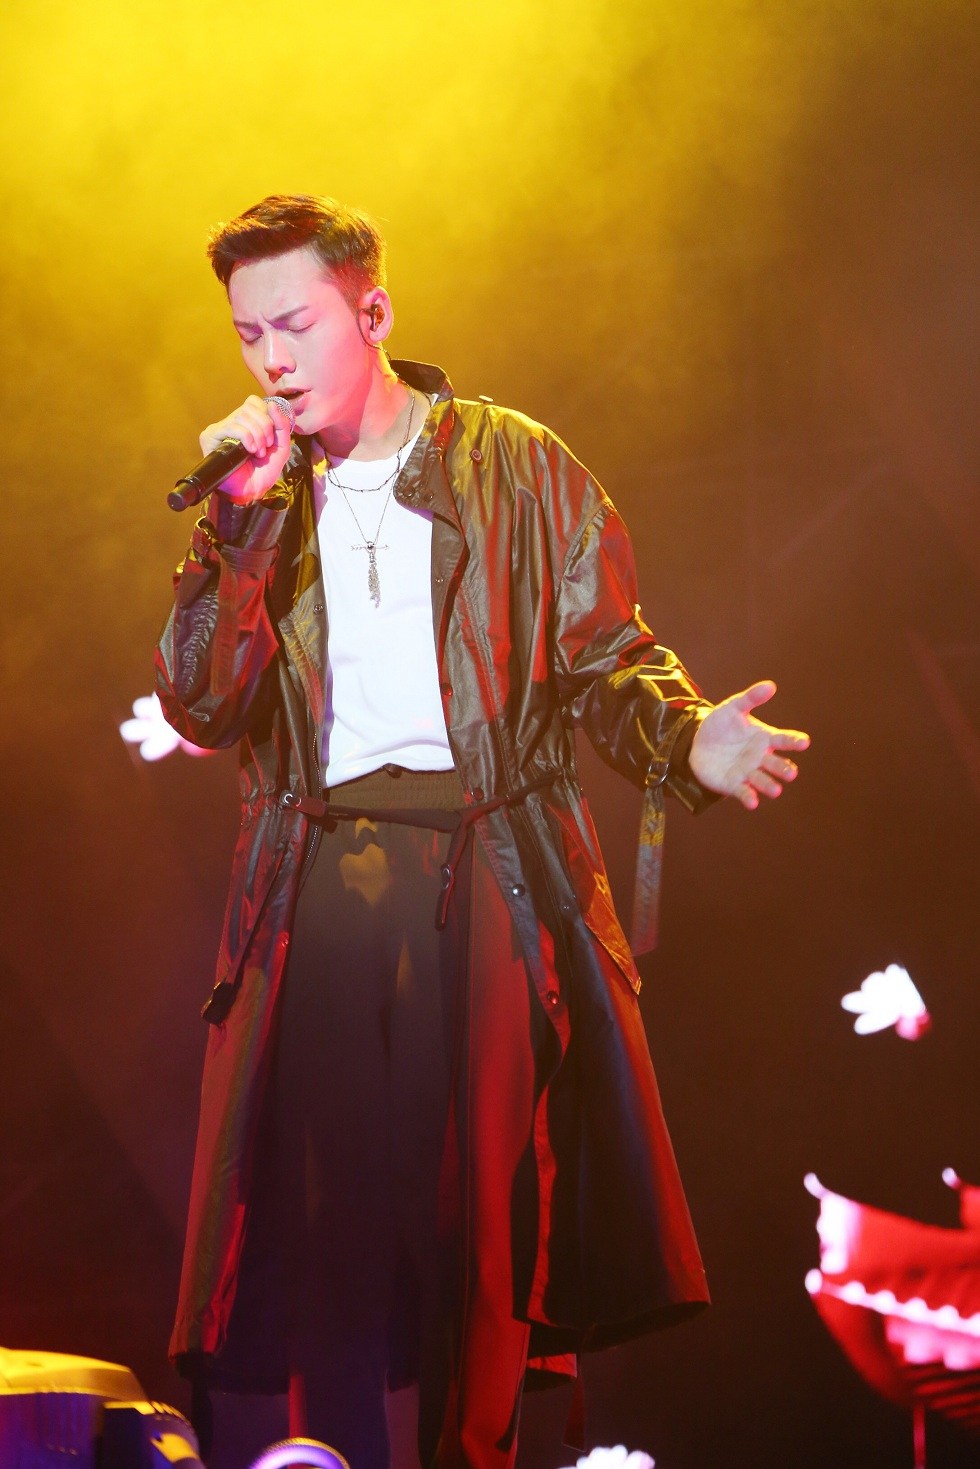 陈伟霆更在演唱会现场翻唱偶像郭富城的《唱这歌》和张国荣的《侧面》